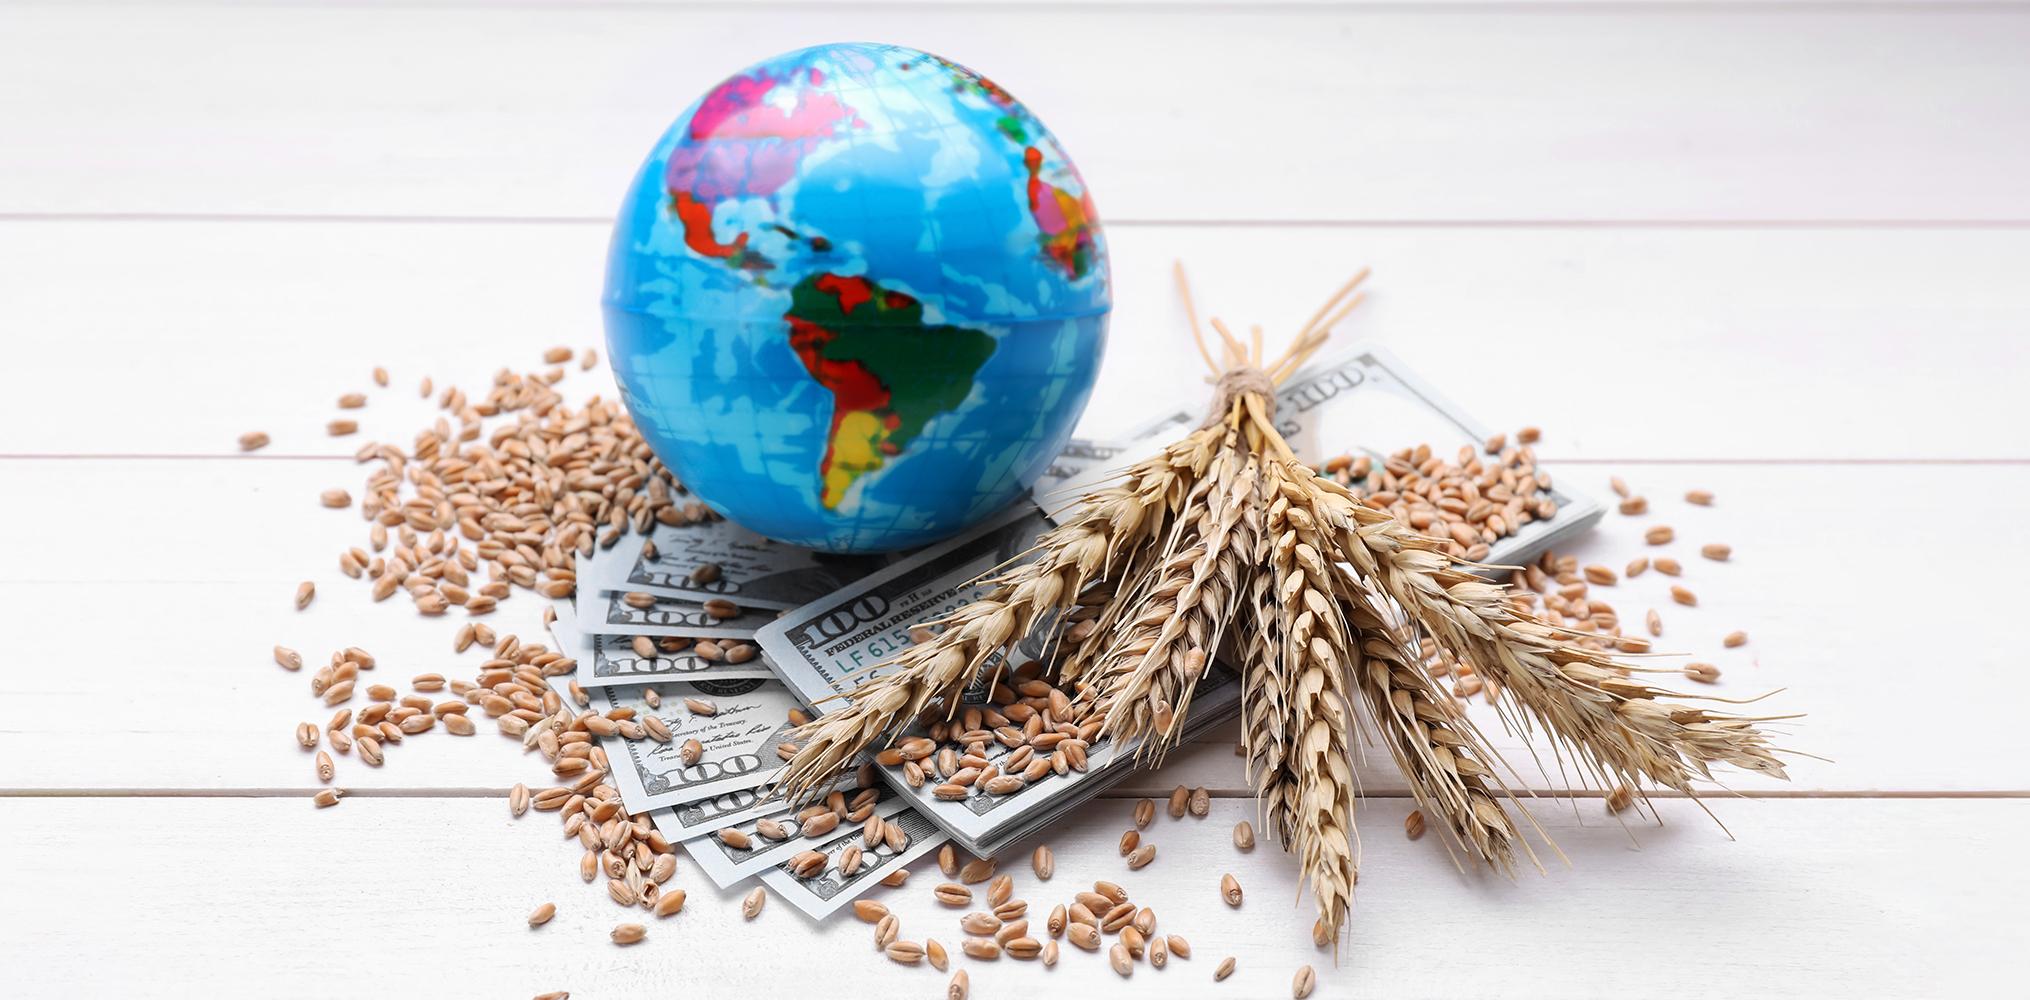 لماذا يمكن أن تتصاعد أزمة الغذاء العالمية؟